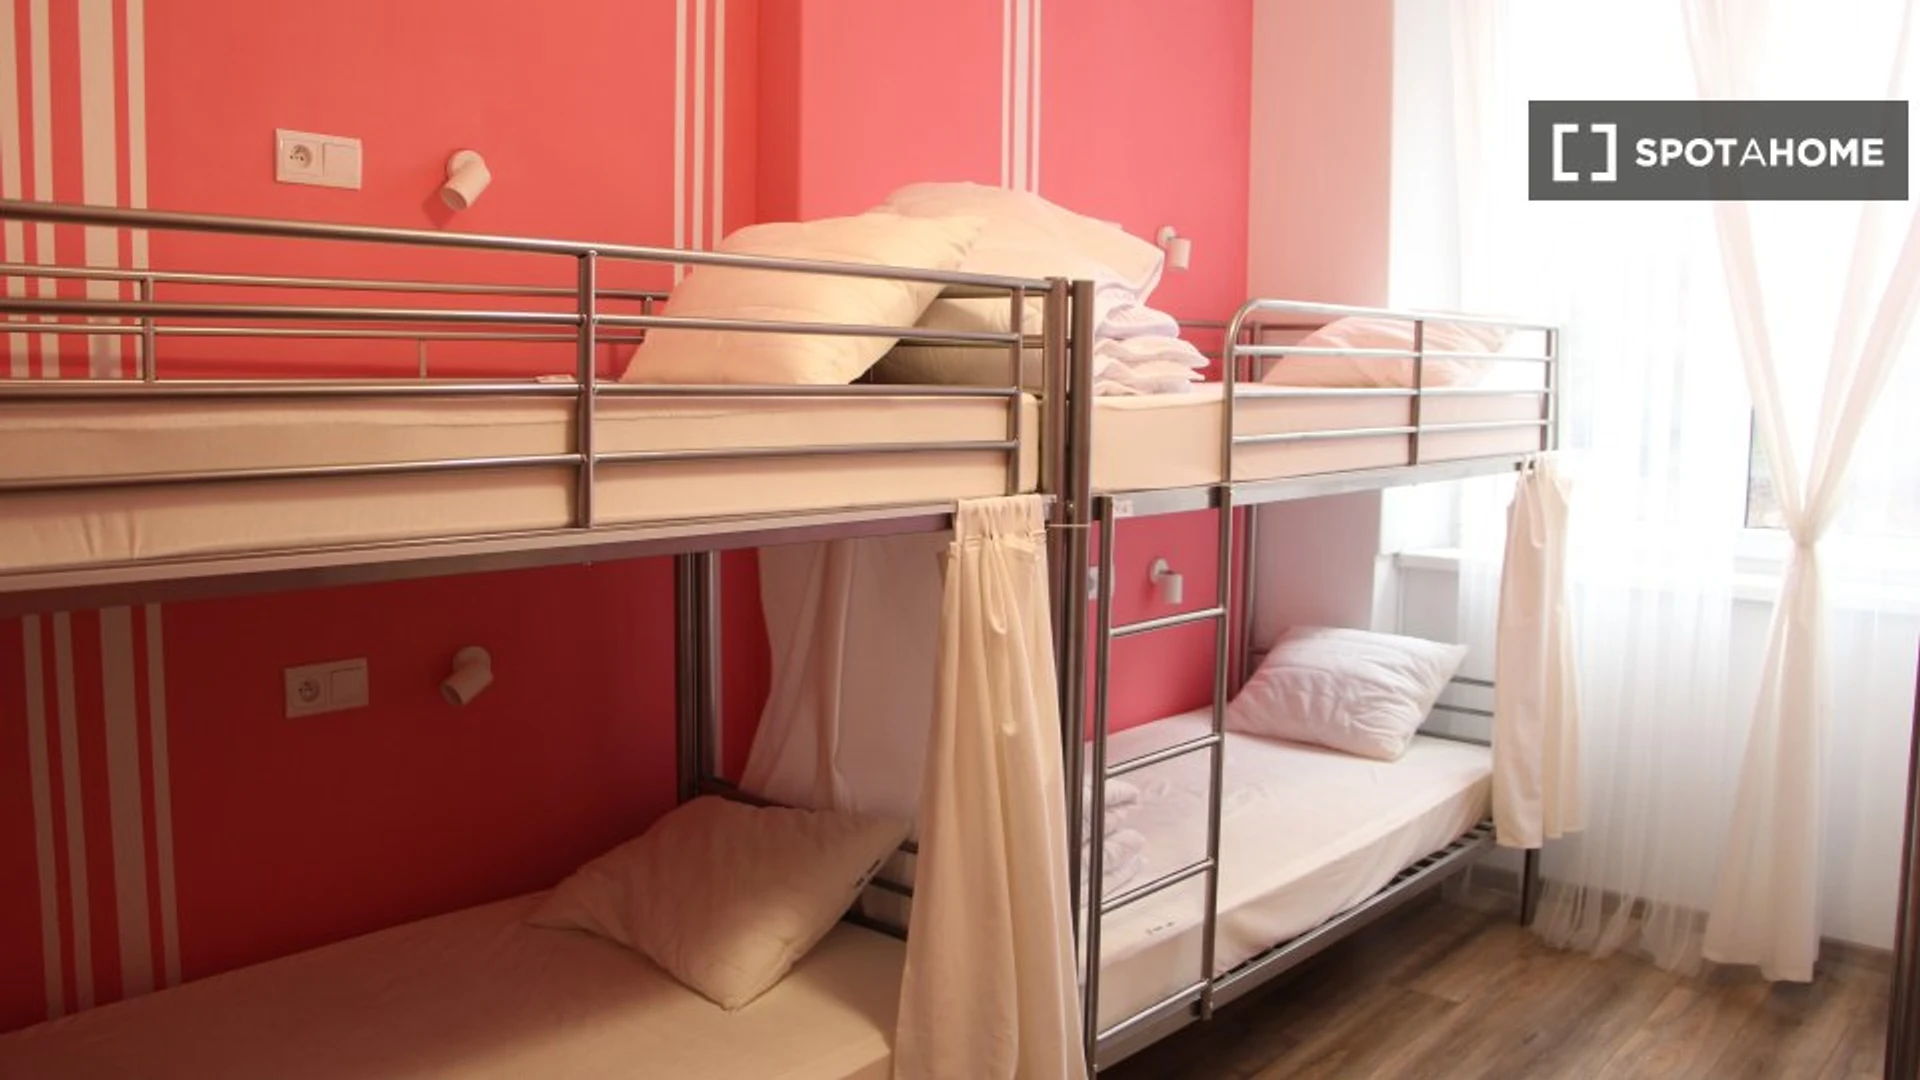 Pokój do wynajęcia z podwójnym łóżkiem w Kraków